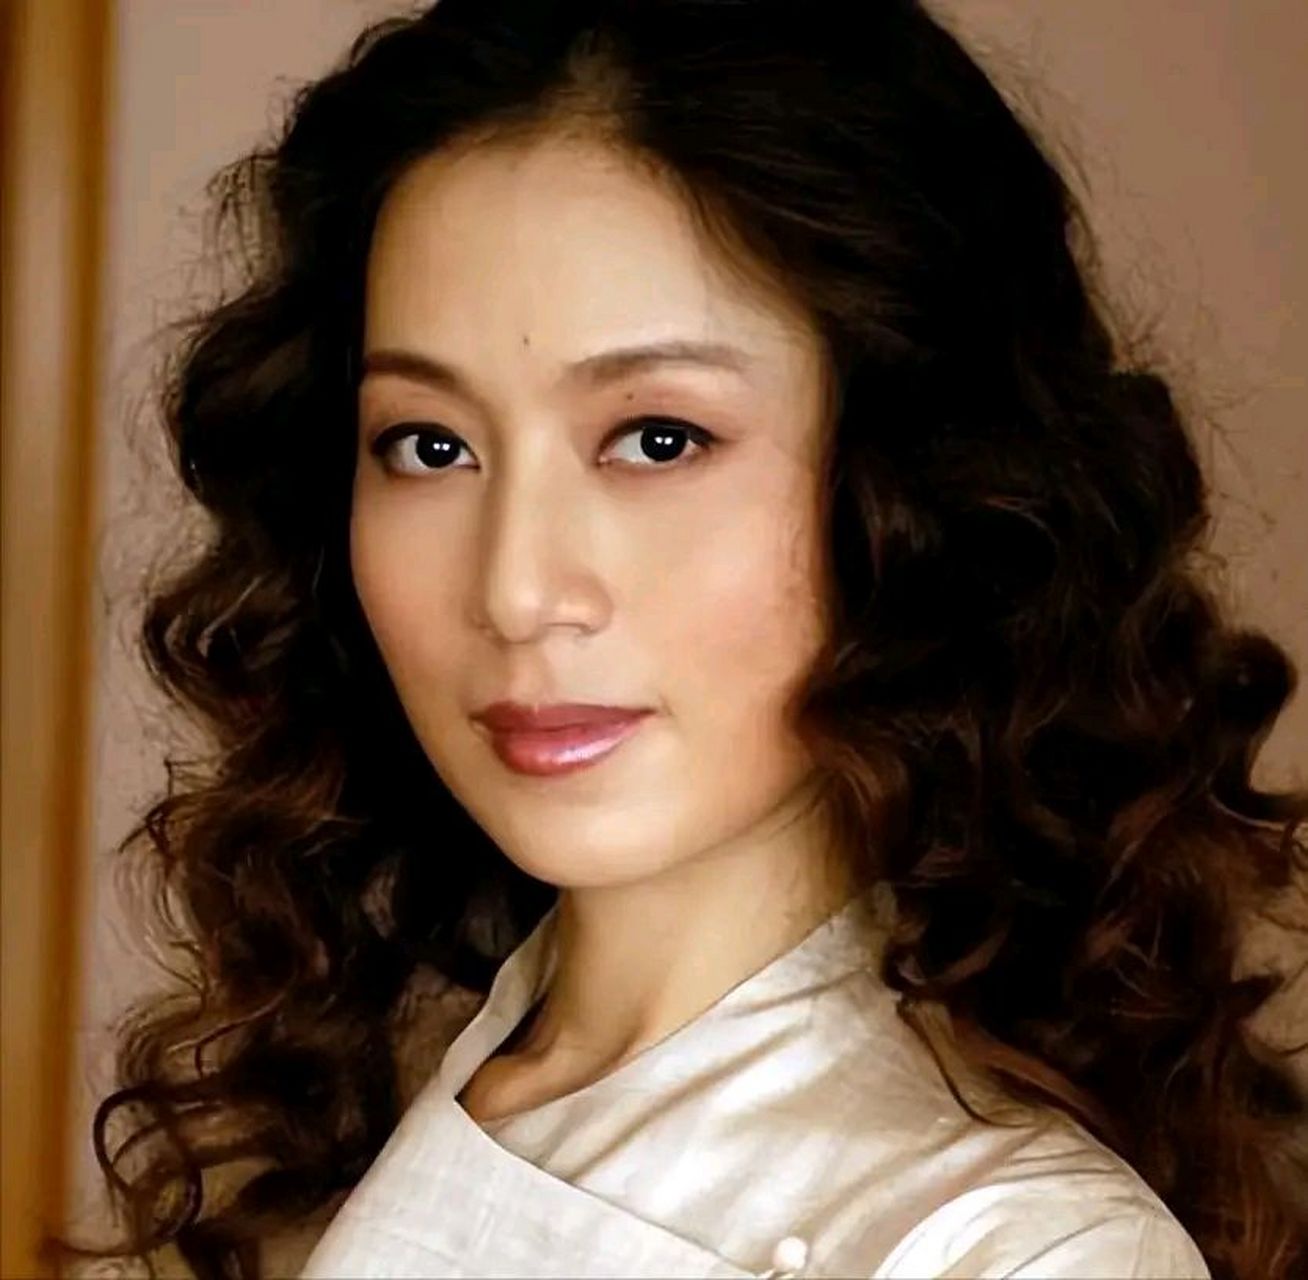 女演员马兰,出演过西游记里的殷温娇,也就是唐僧的母亲,而此时的马兰